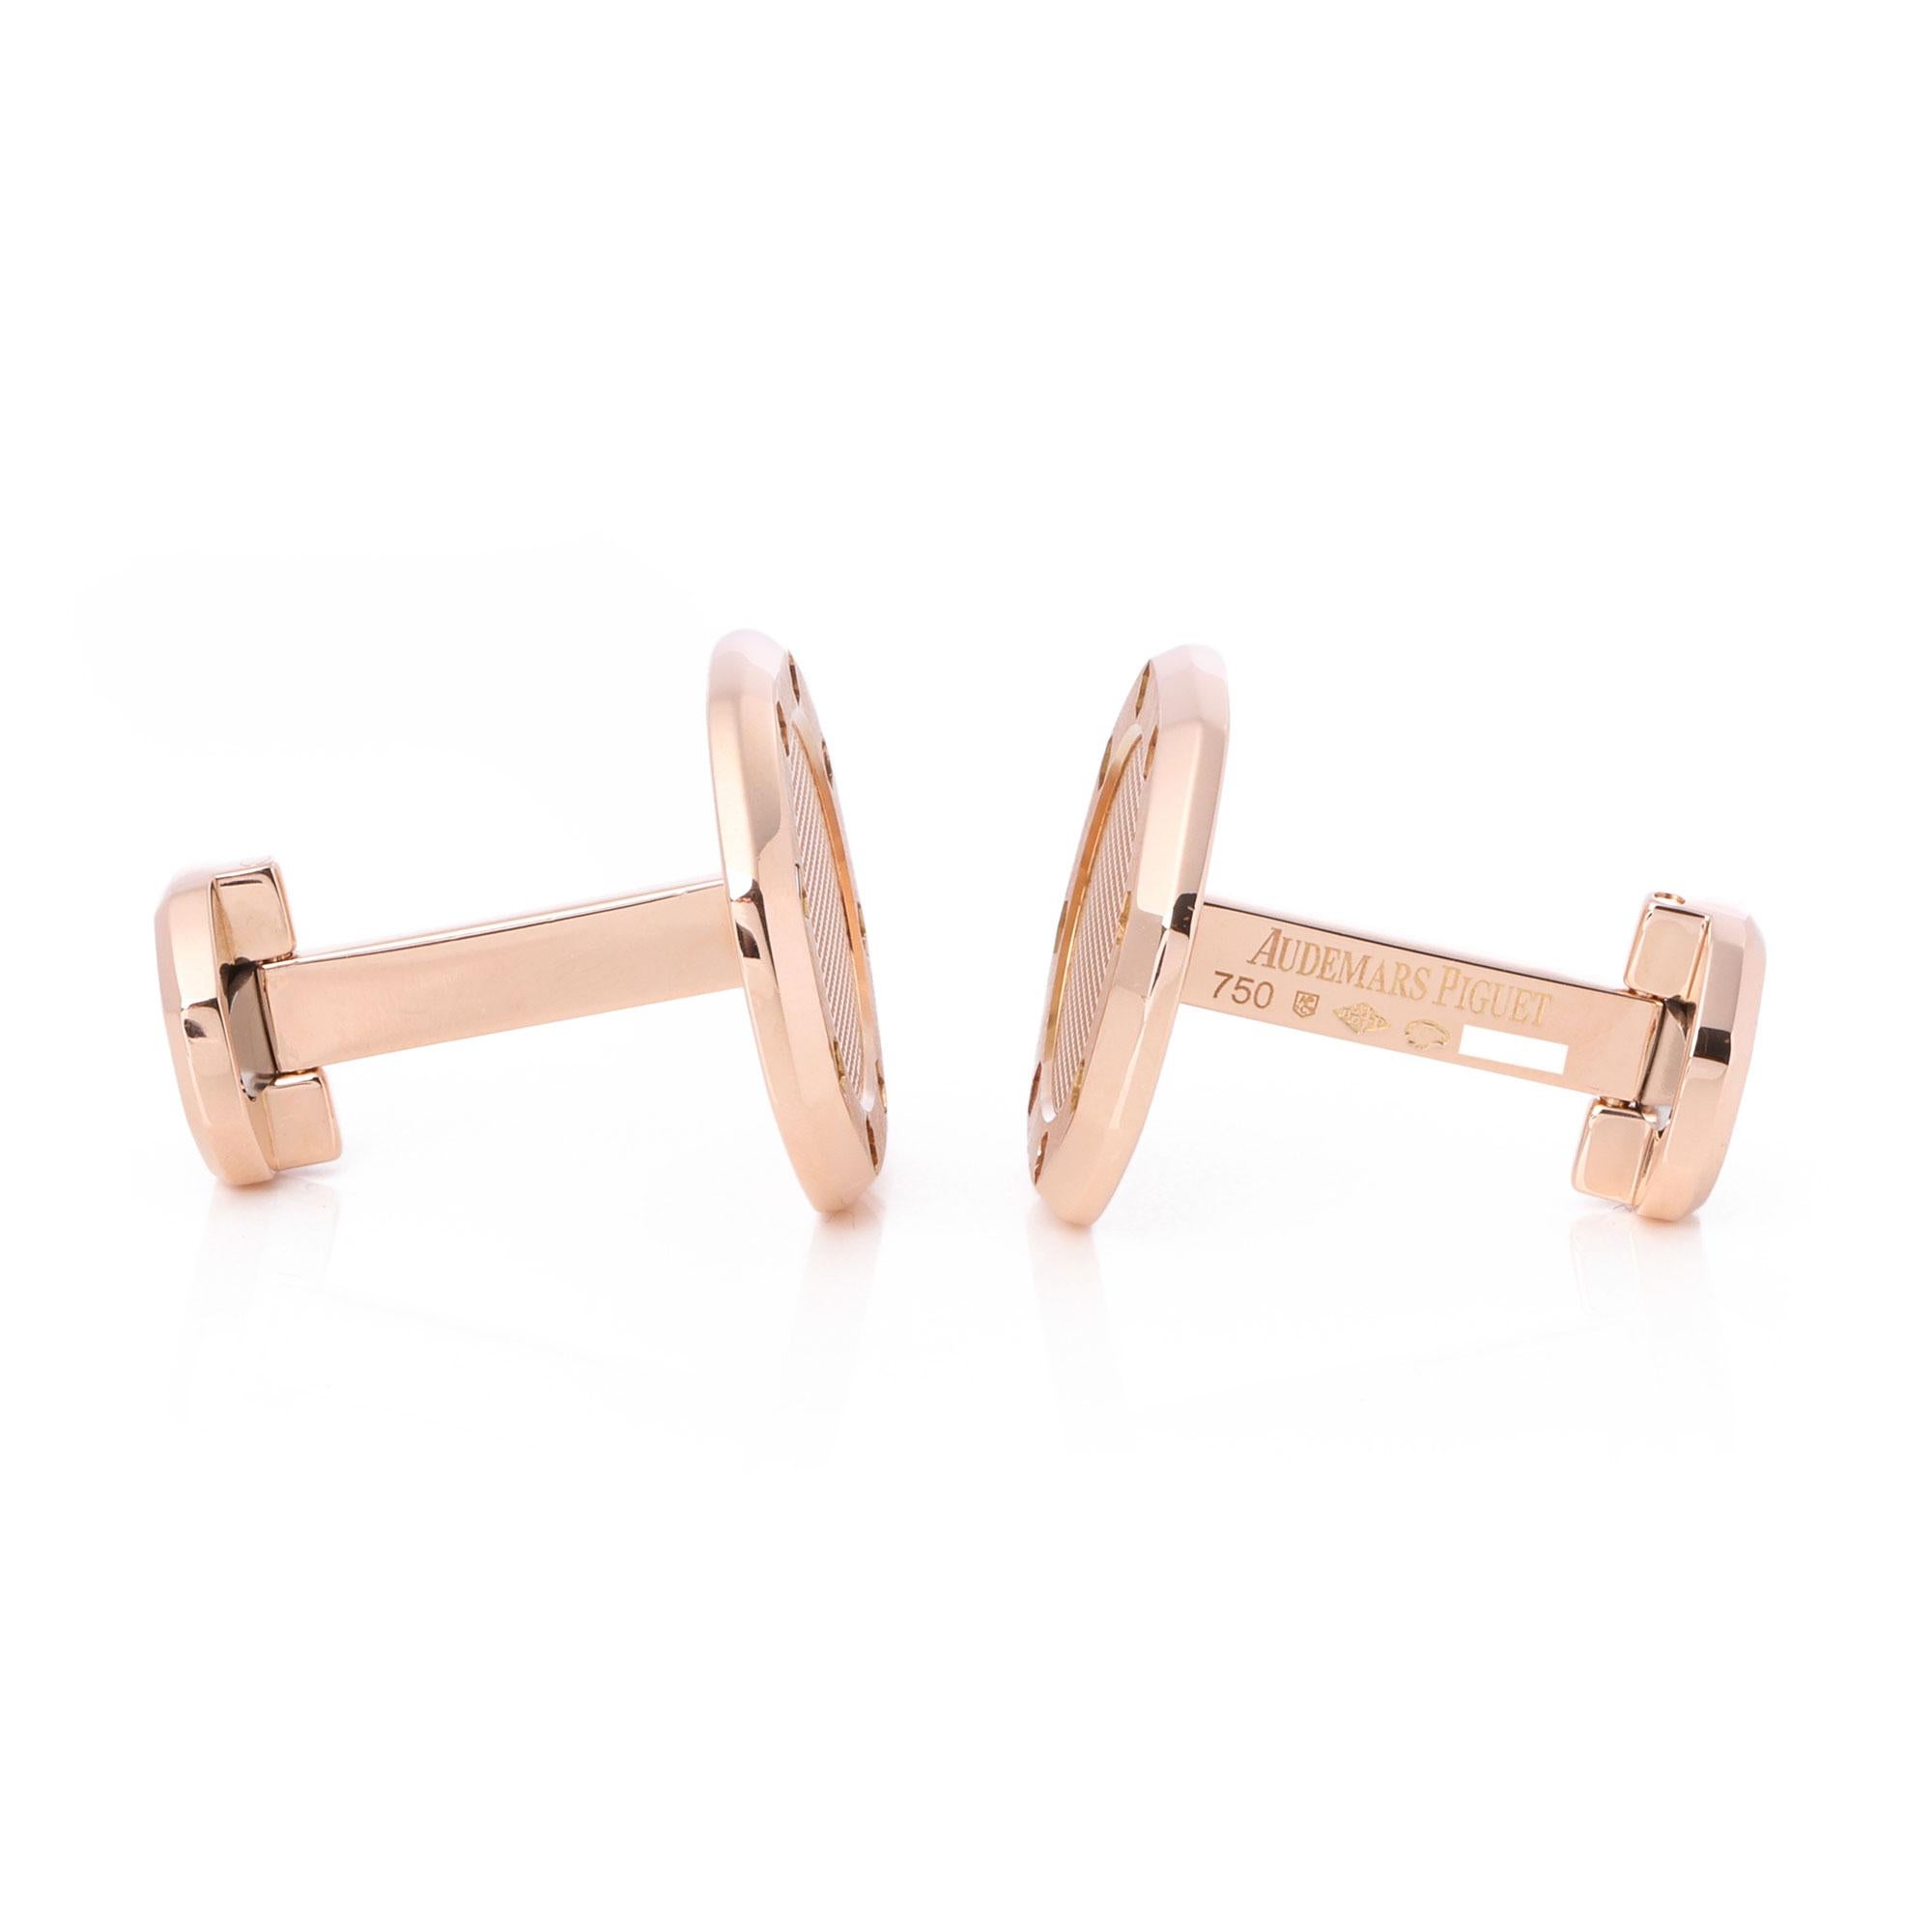 Contemporary Audemars Piguet Royal Oak 18ct Pink Gold Cufflinks